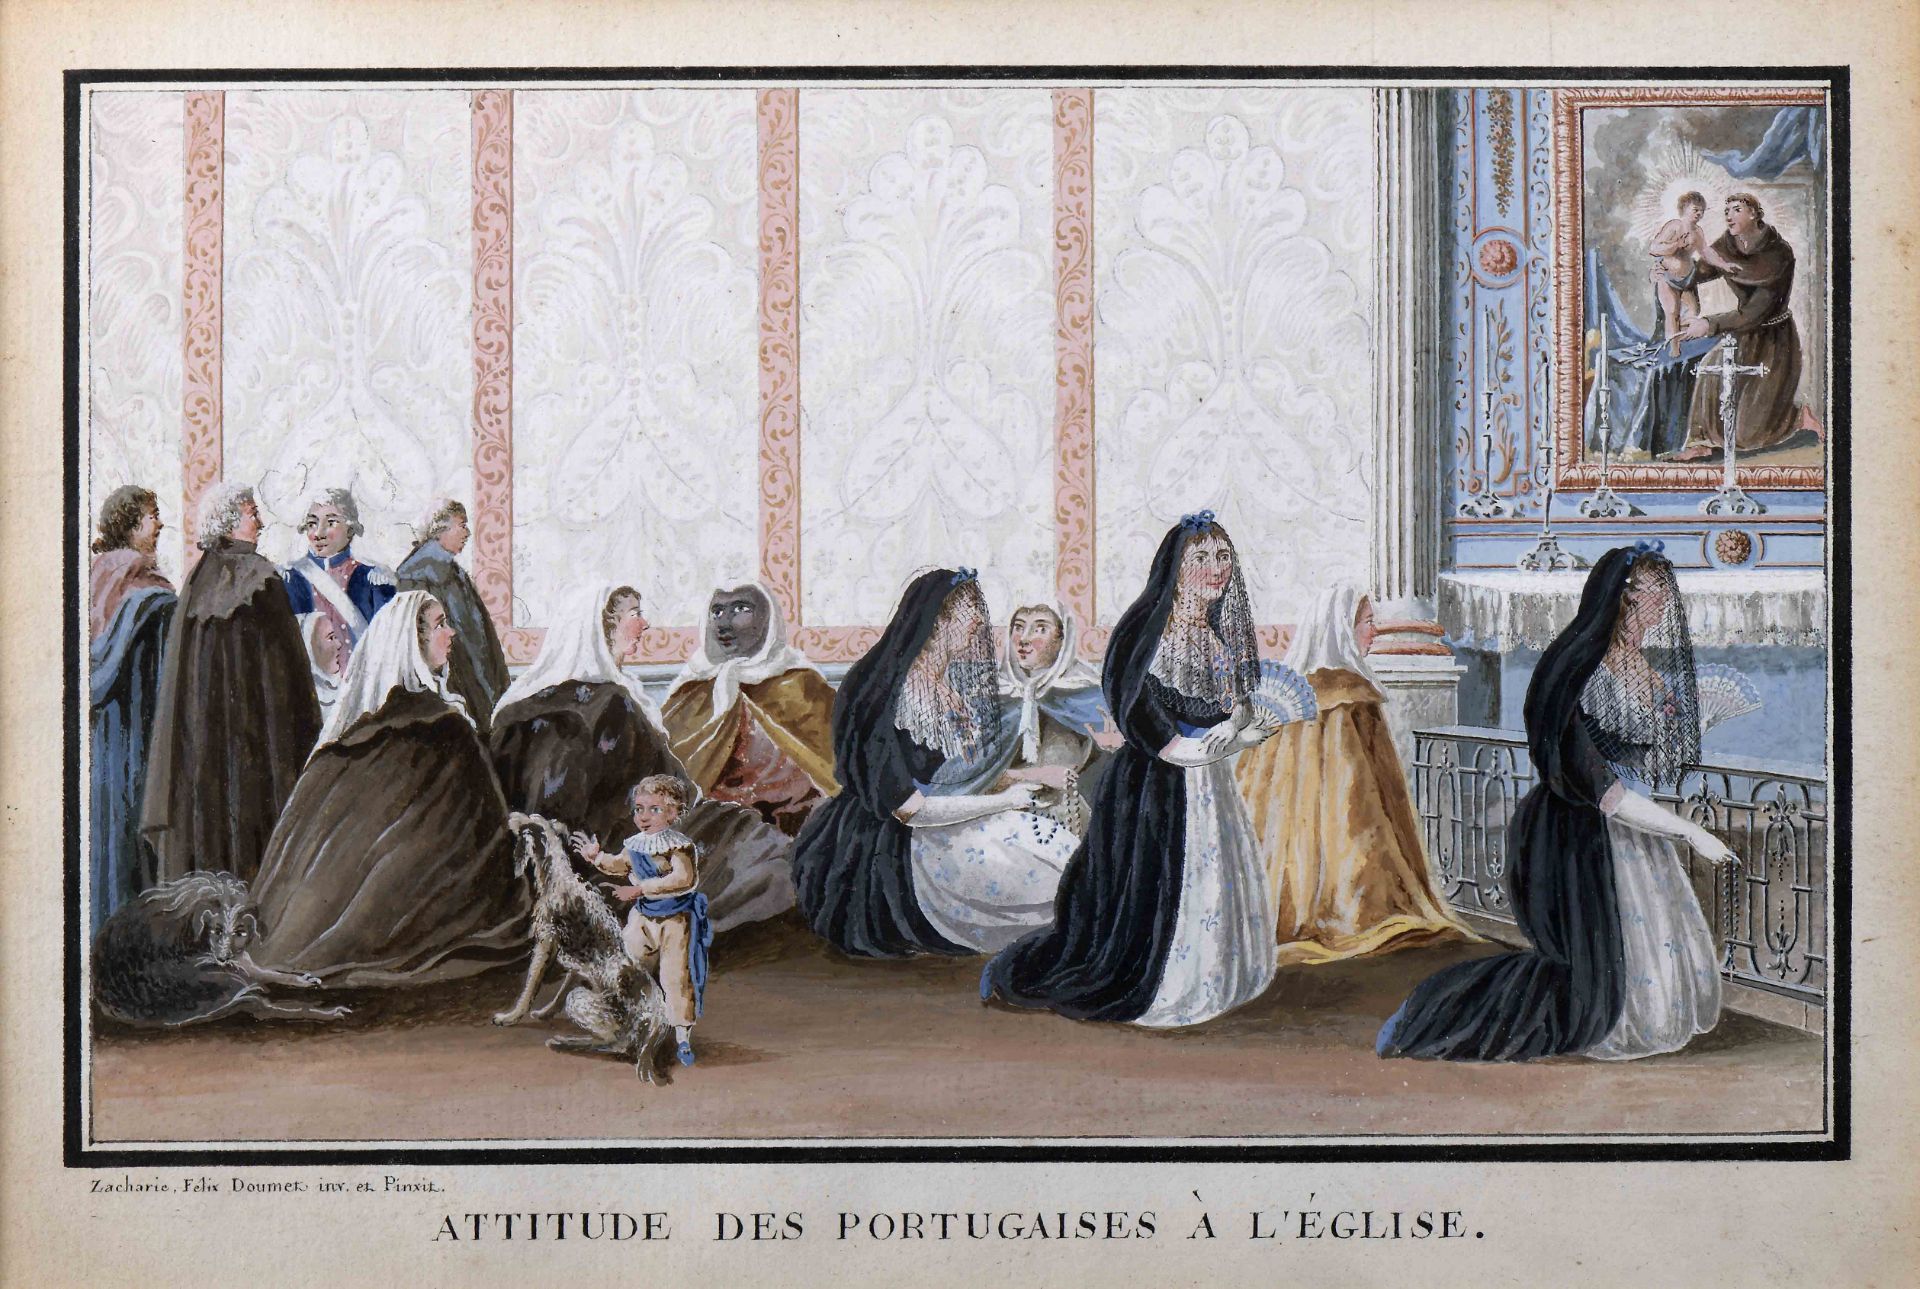 ZACHARIE FÉLIX DOUMET - 1761-1818 "Attitude des Portugaises à L'Église" - Image 2 of 2